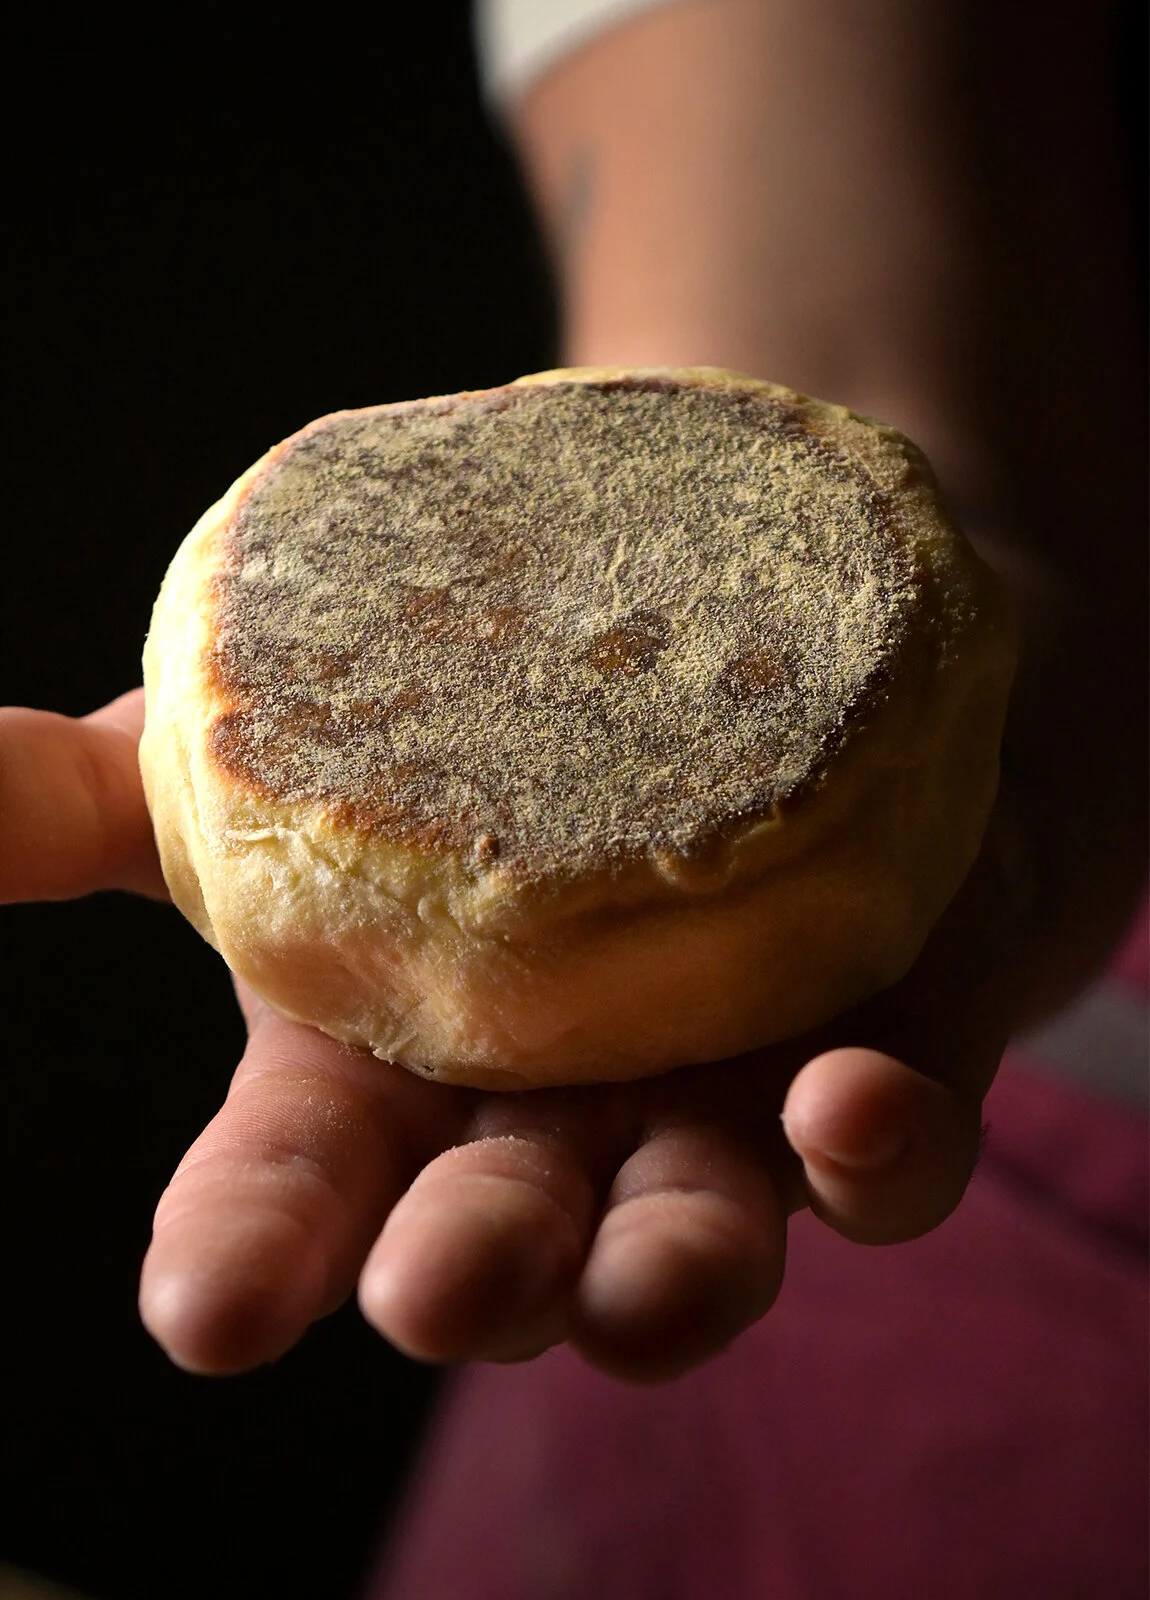 Portuguese Muffin